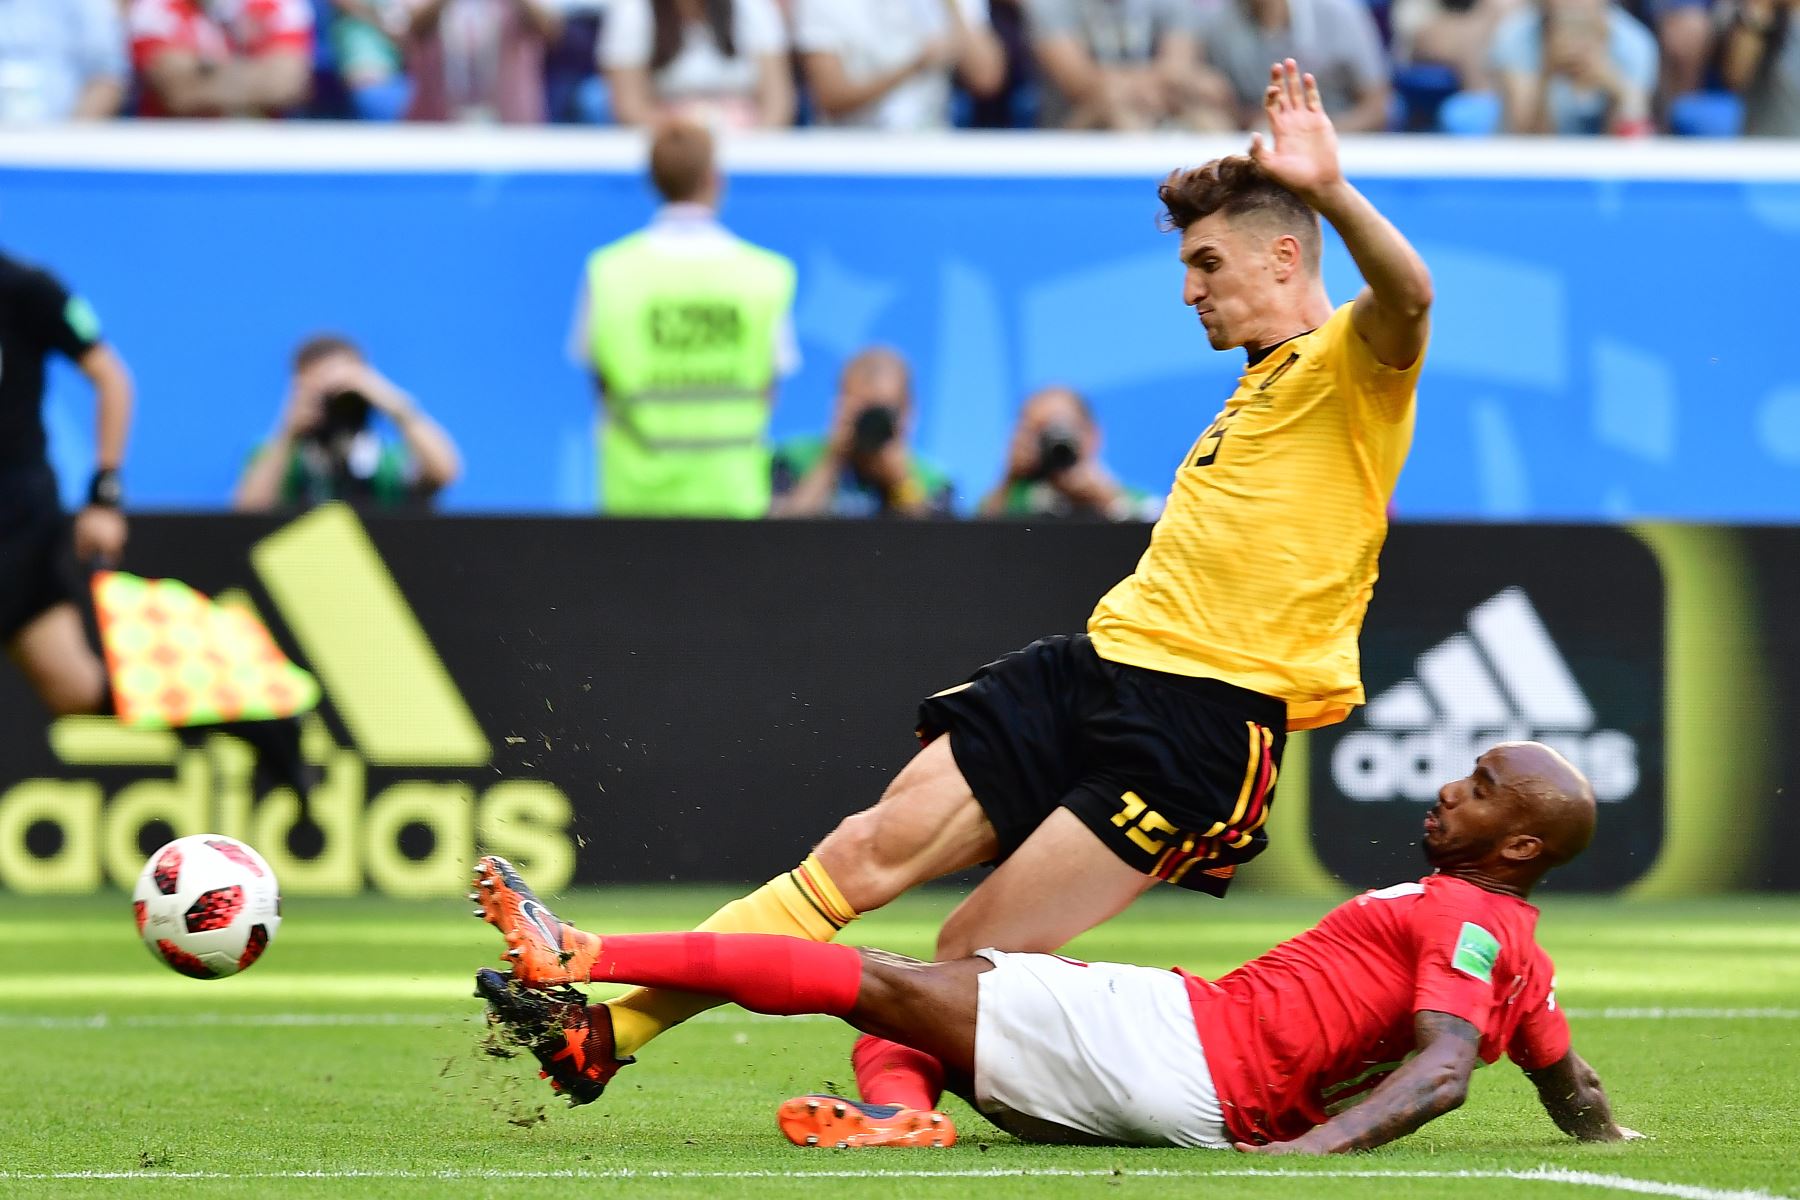 El defensor belga Thomas Meunier (L) compite con el mediocampista inglés Fabian Delph durante su partido por la Copa Mundial 2018 Rusia por el partido de fútbol entre Bélgica e Inglaterra en el Estadio de San Petersburgo el 14 de julio de 2018. / AFP